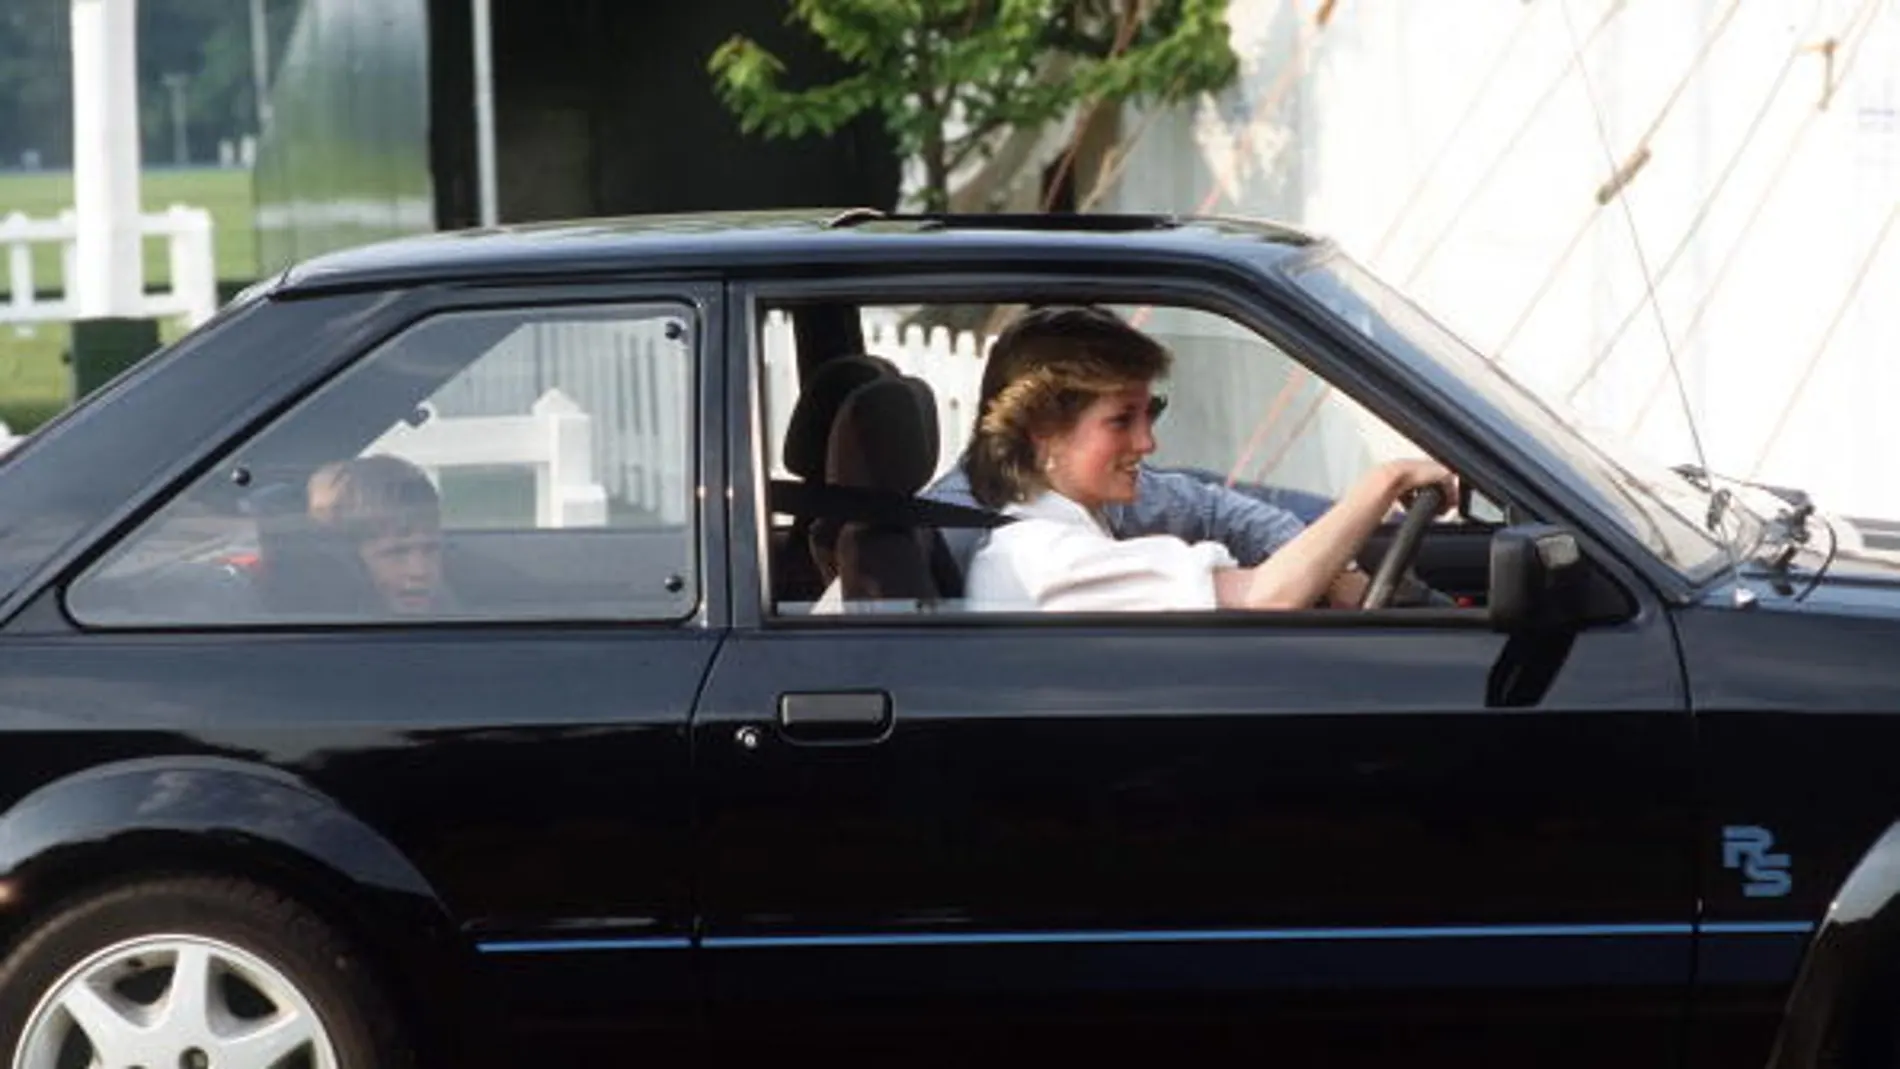 Sale a subasta el Ford Escort de la Princesa Diana